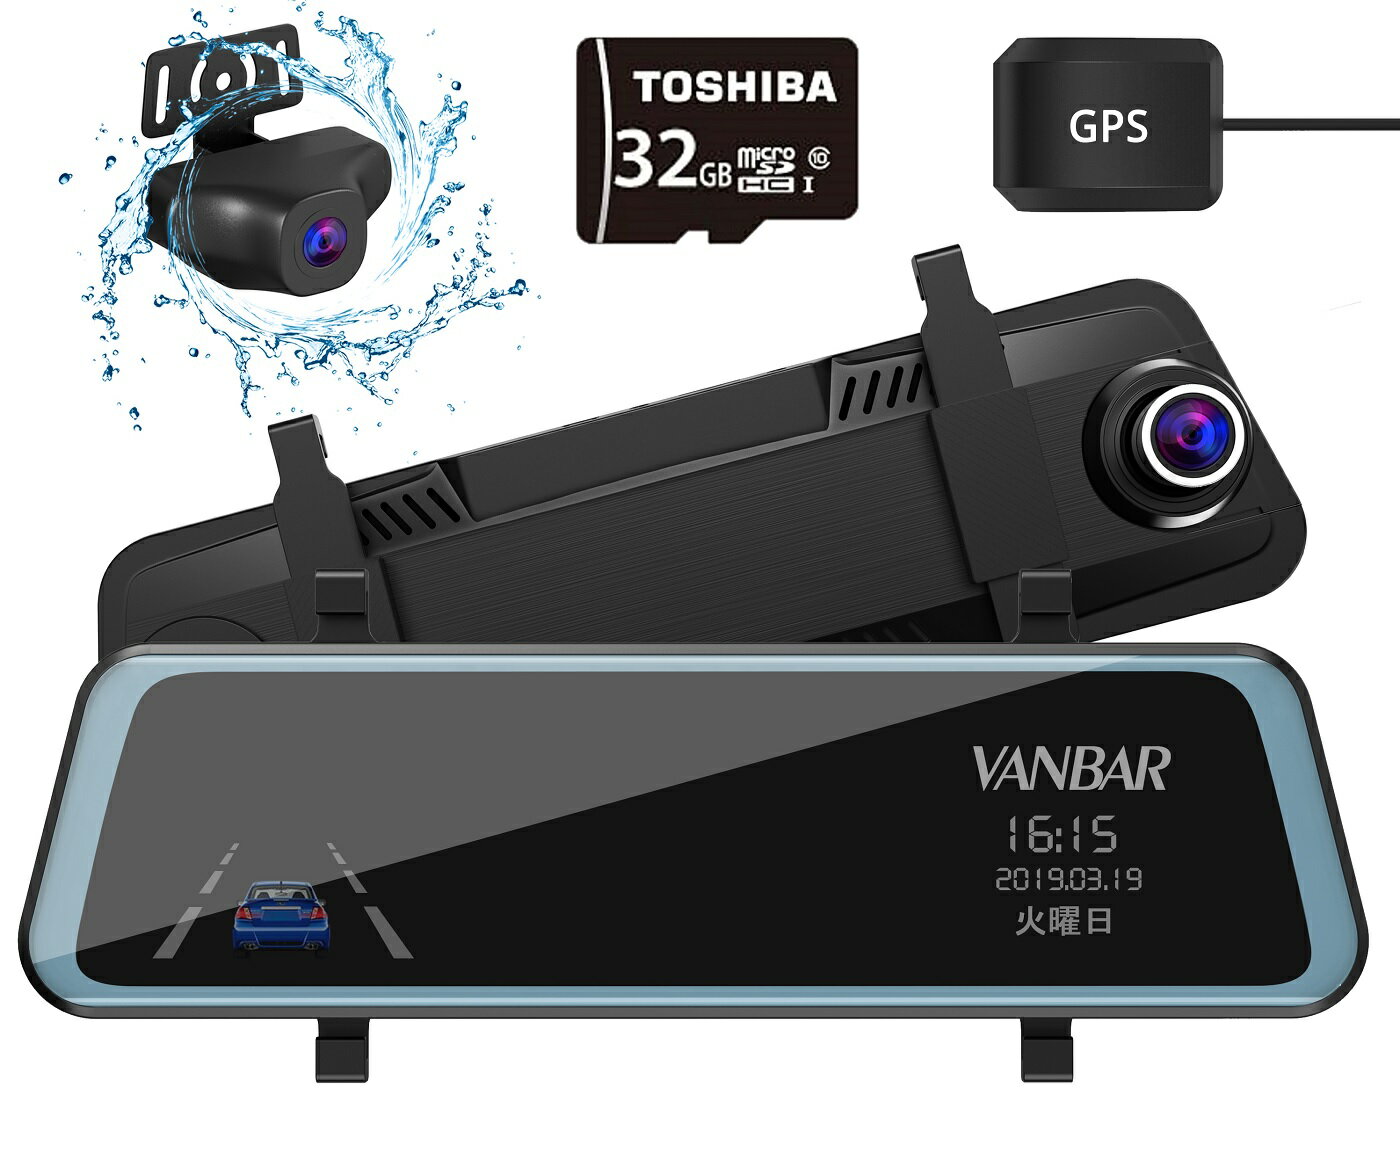 VANBAR ドライブレコーダー ミラー型 前後カメラ 前後1080P 32GBカード付属 9.7インチ タッチパネル 1080P FHD フルHD 前170°後140°広角レンズ GPS搭載 超大きフルスクリーン SONYセンサー/レンズ採用 ドラレコ